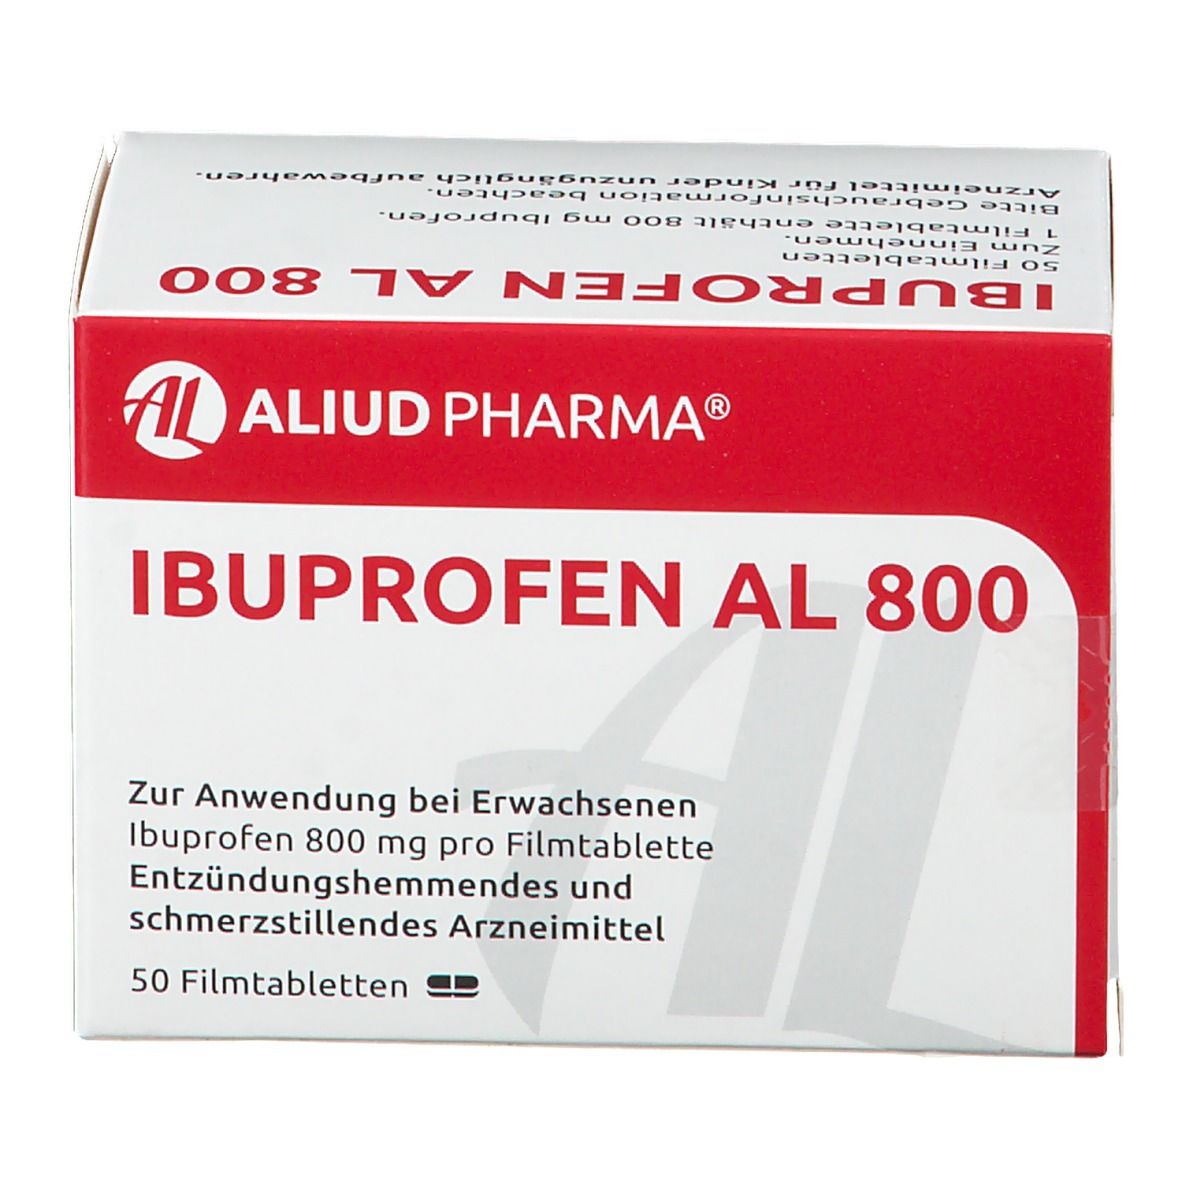 Ibuprofen AL 800